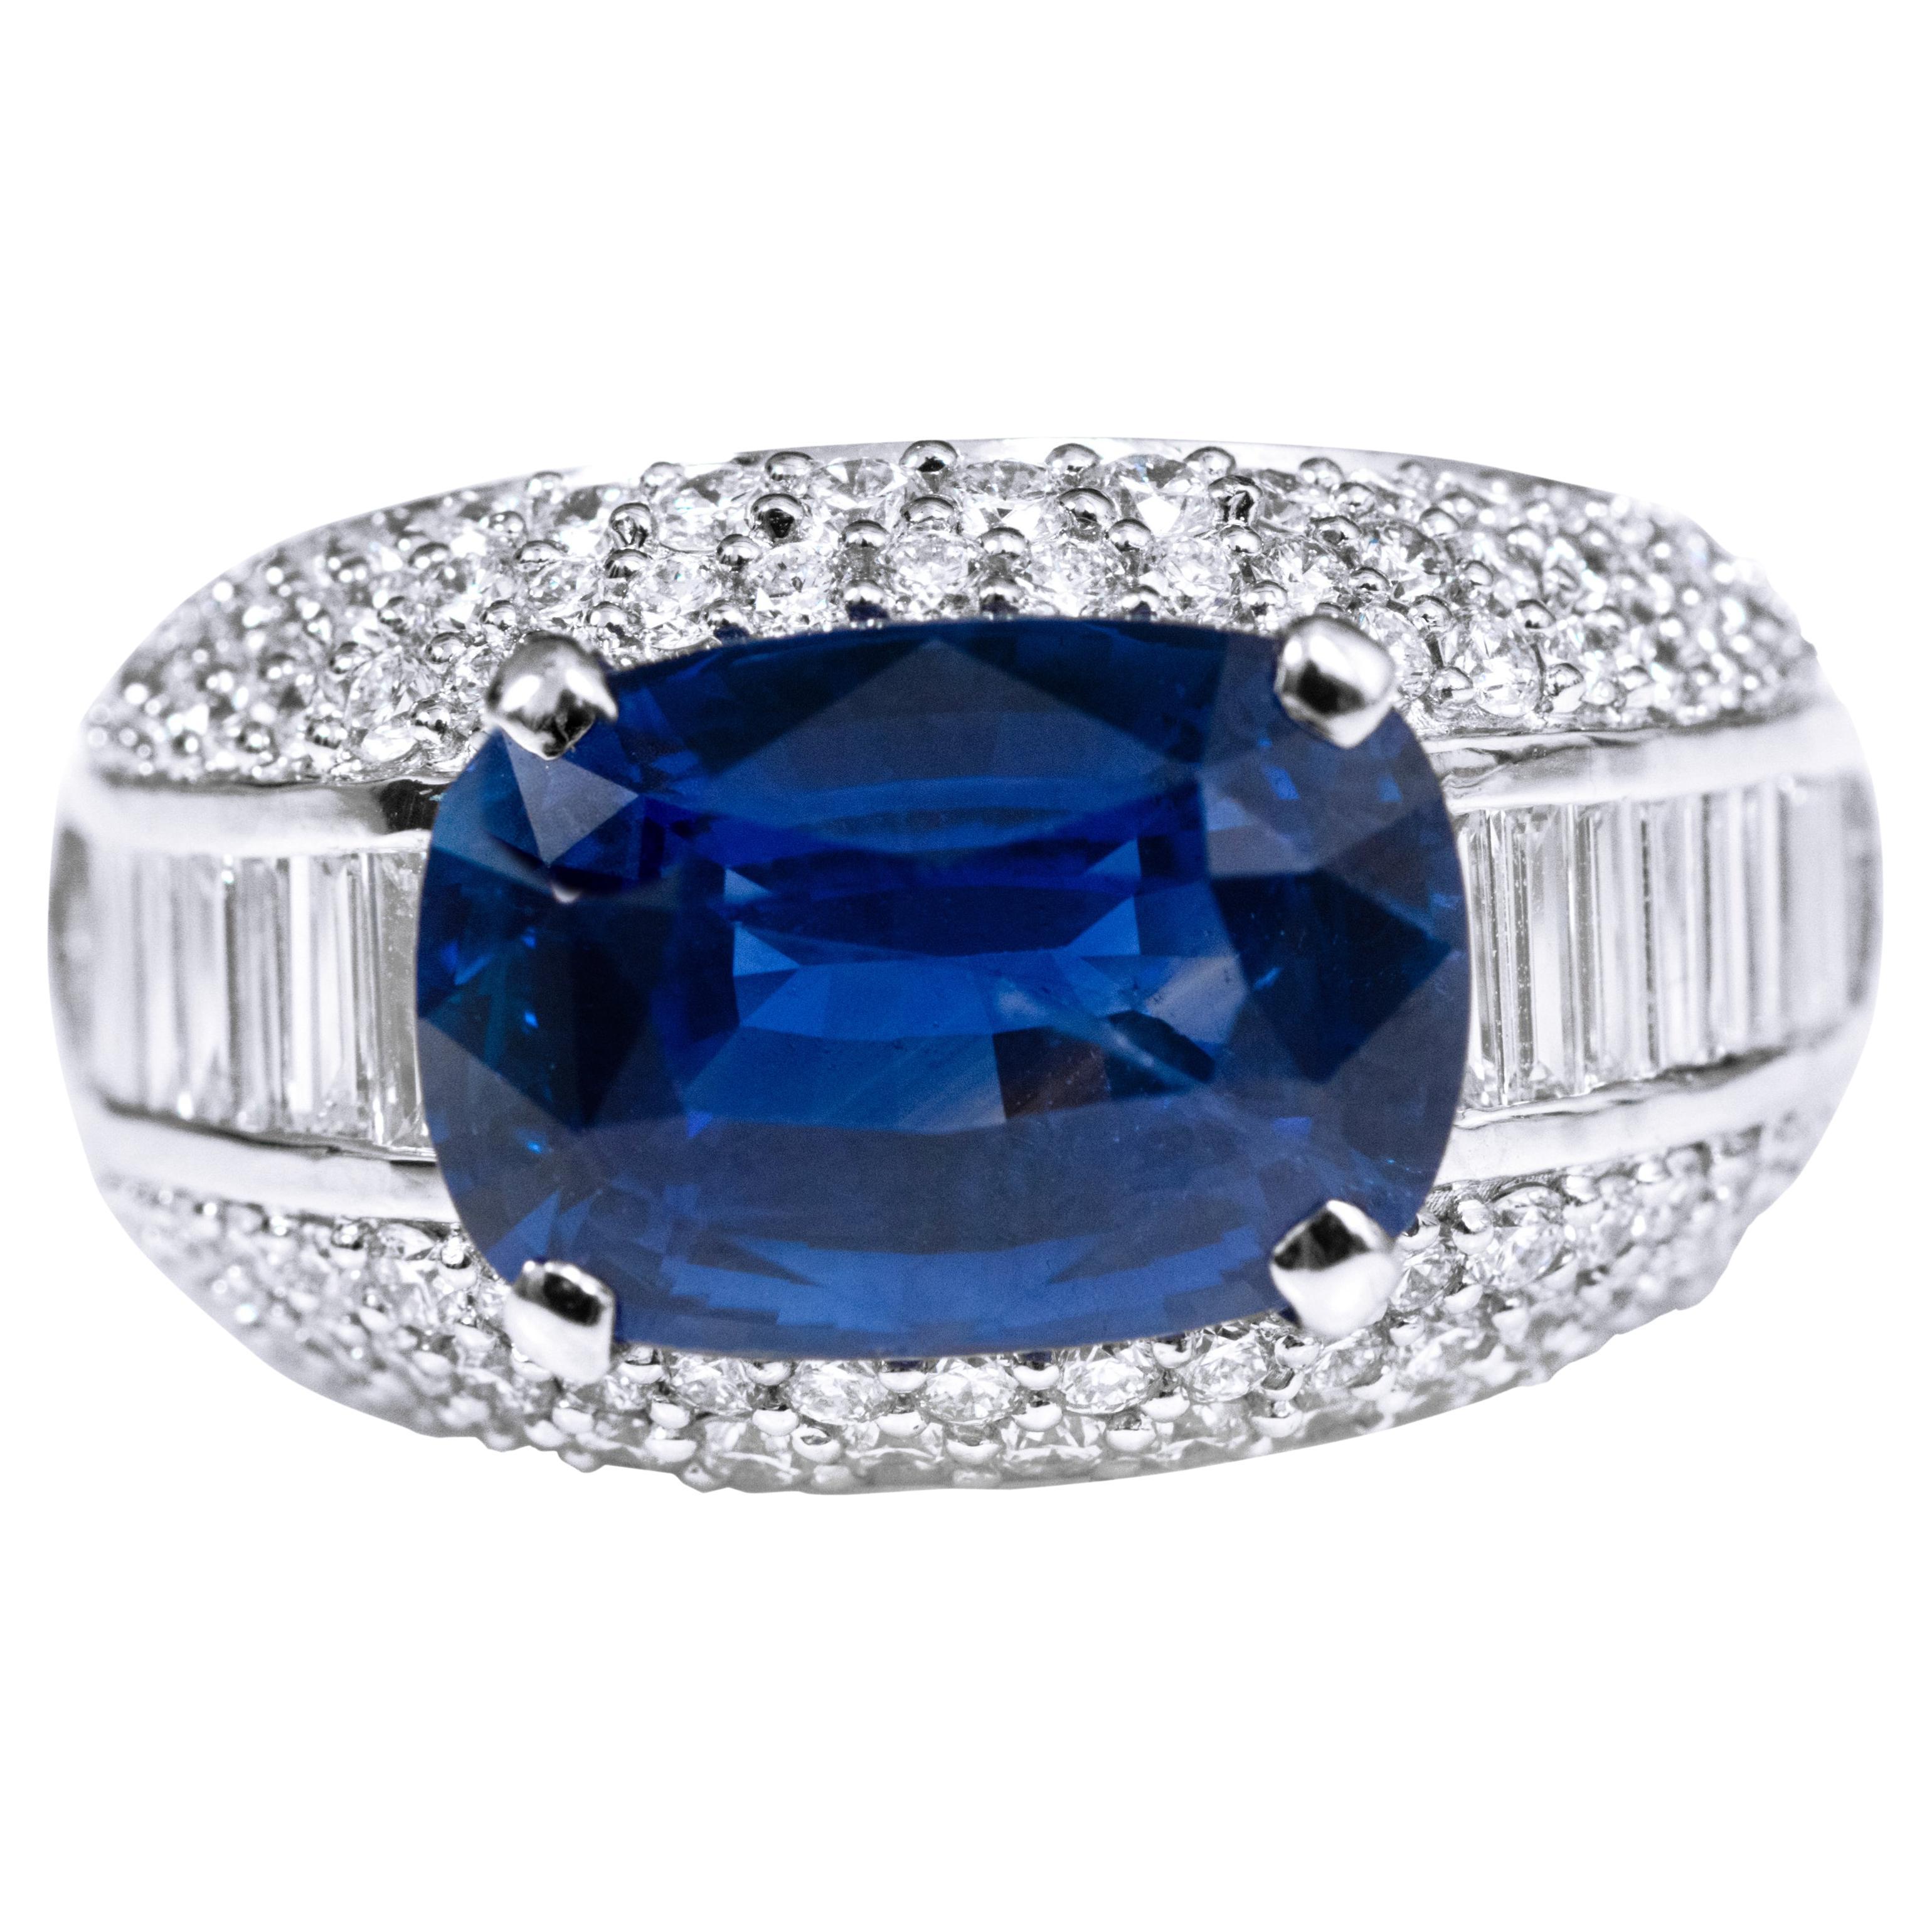 Bague solitaire certifiée GIA avec saphir bleu royal de 8,16 carats et diamants